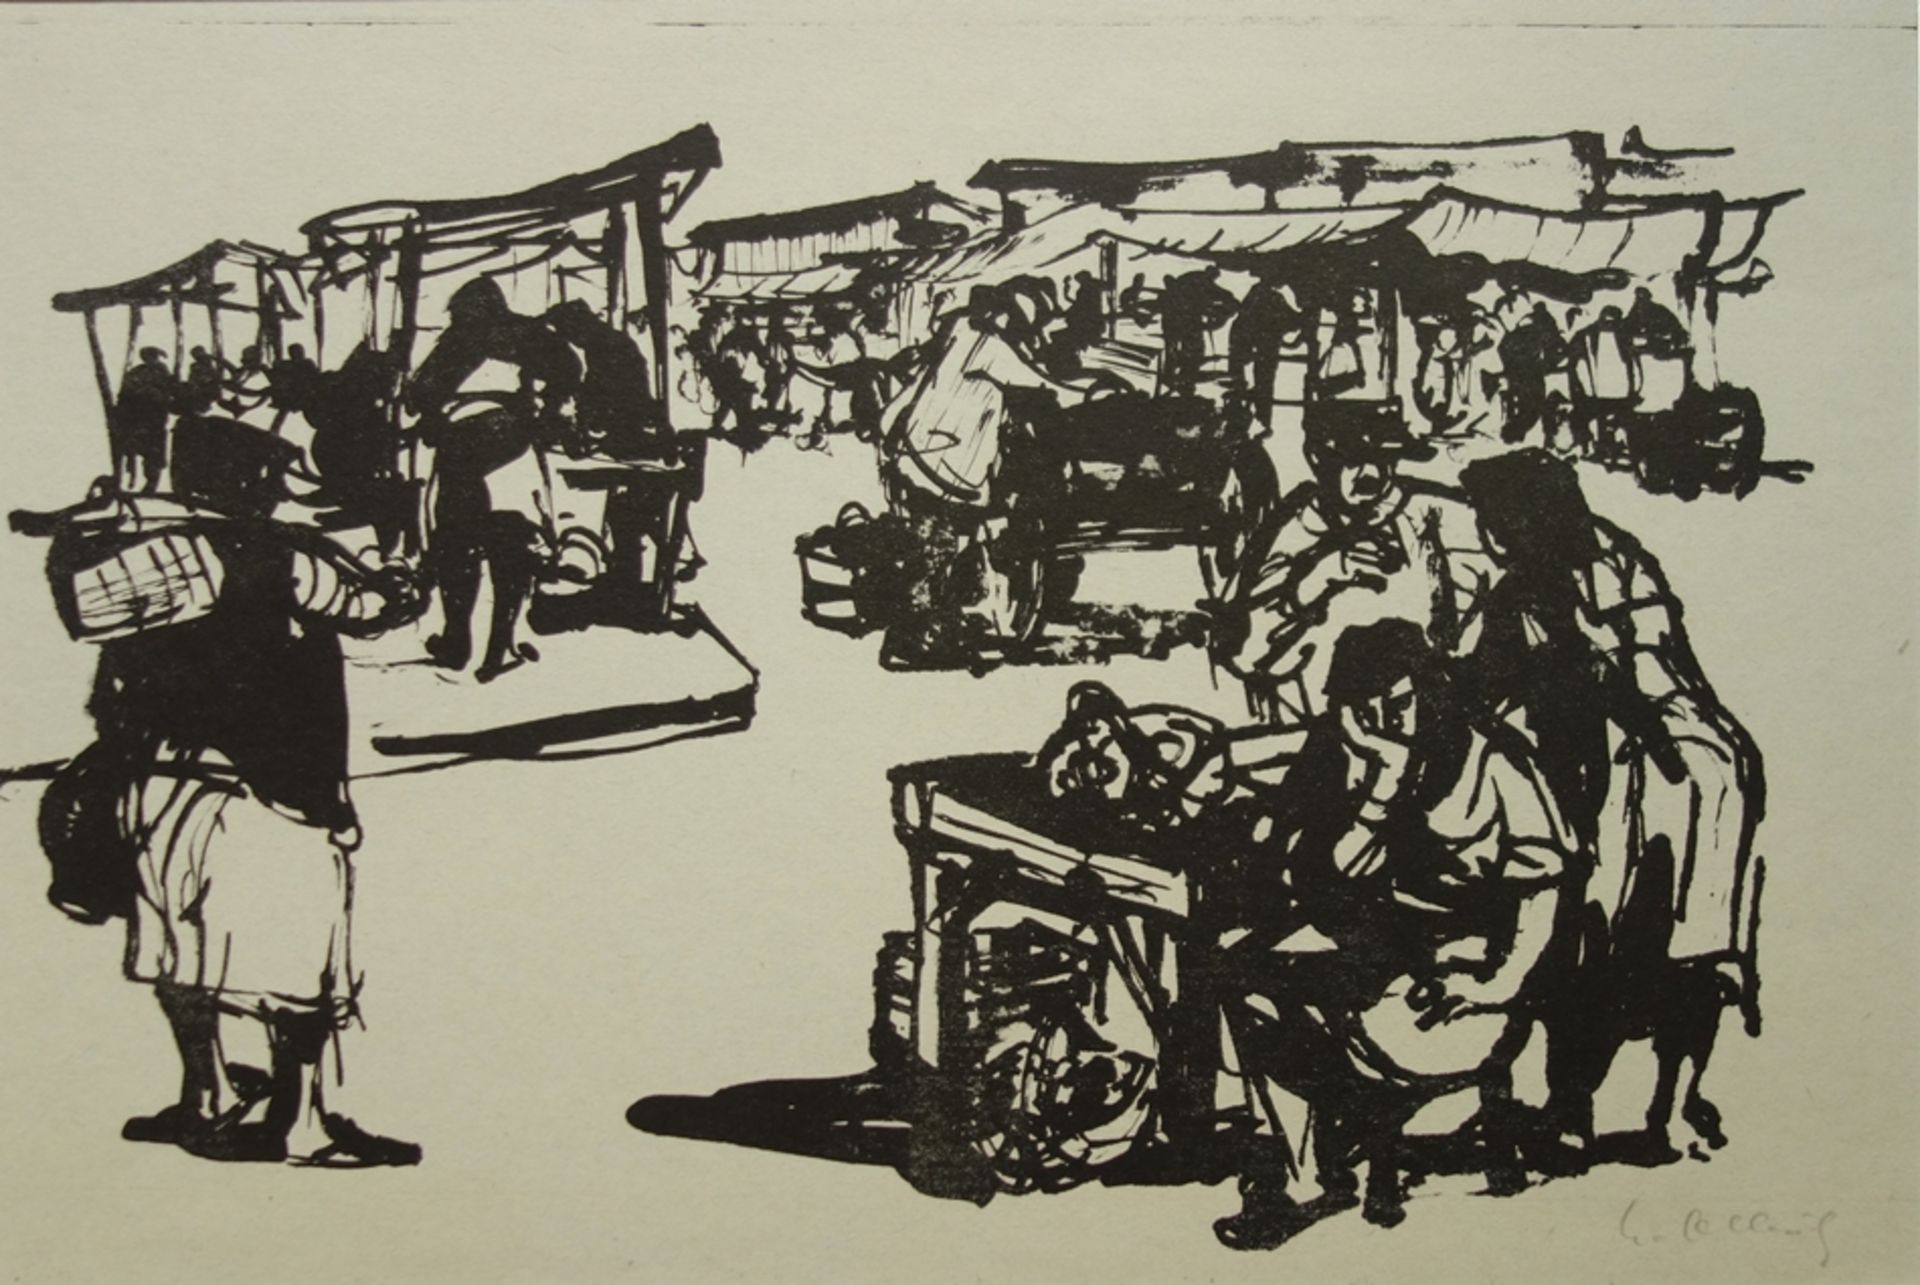 Heinz Olbrich (1914, Carlsfeld - ca. 2009, Altenburg), "Wochenmarkt in Tirnovo/